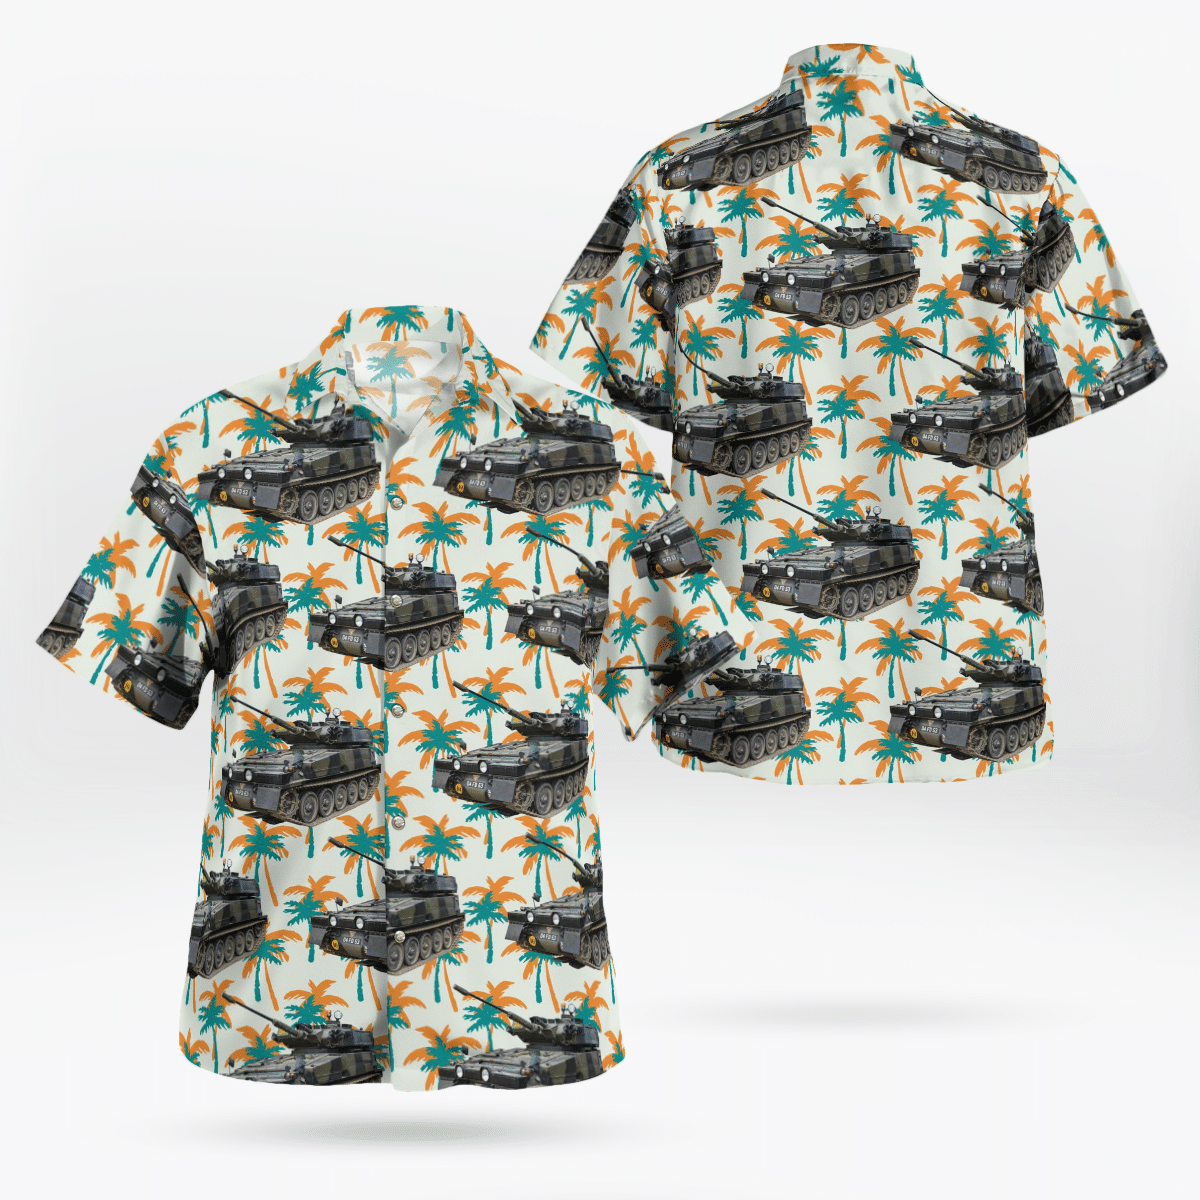 You won't regret buying these Aloha Shirt 50